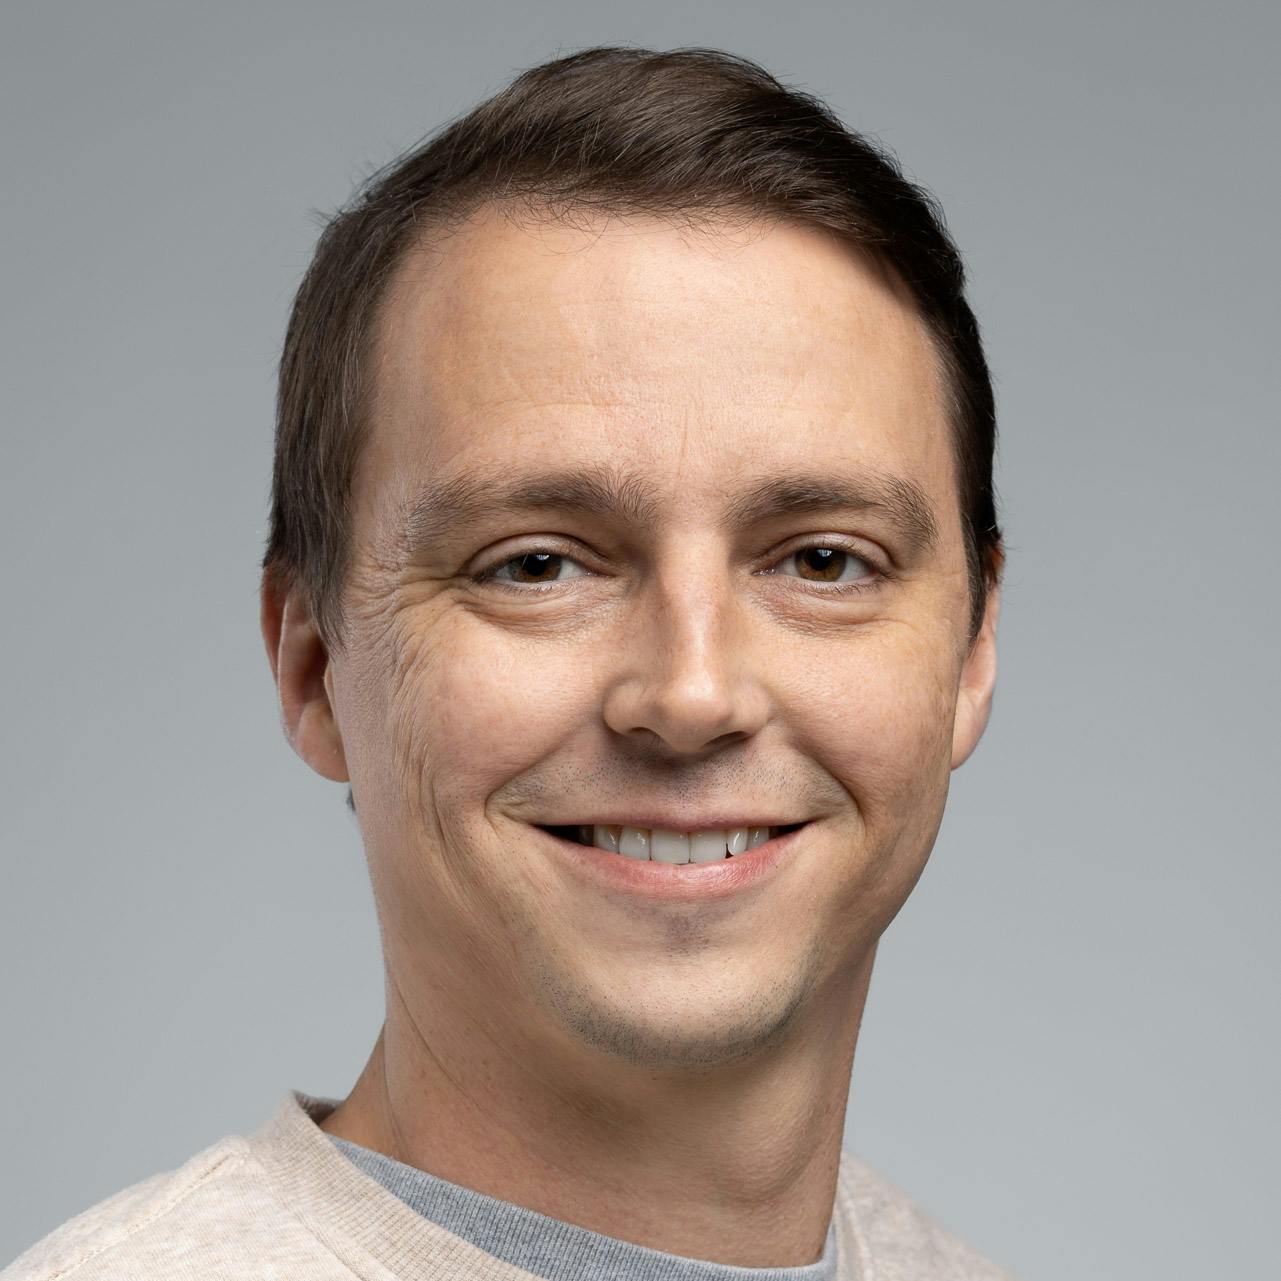 Brett Ausmeier - Co-Founder and Technical Director